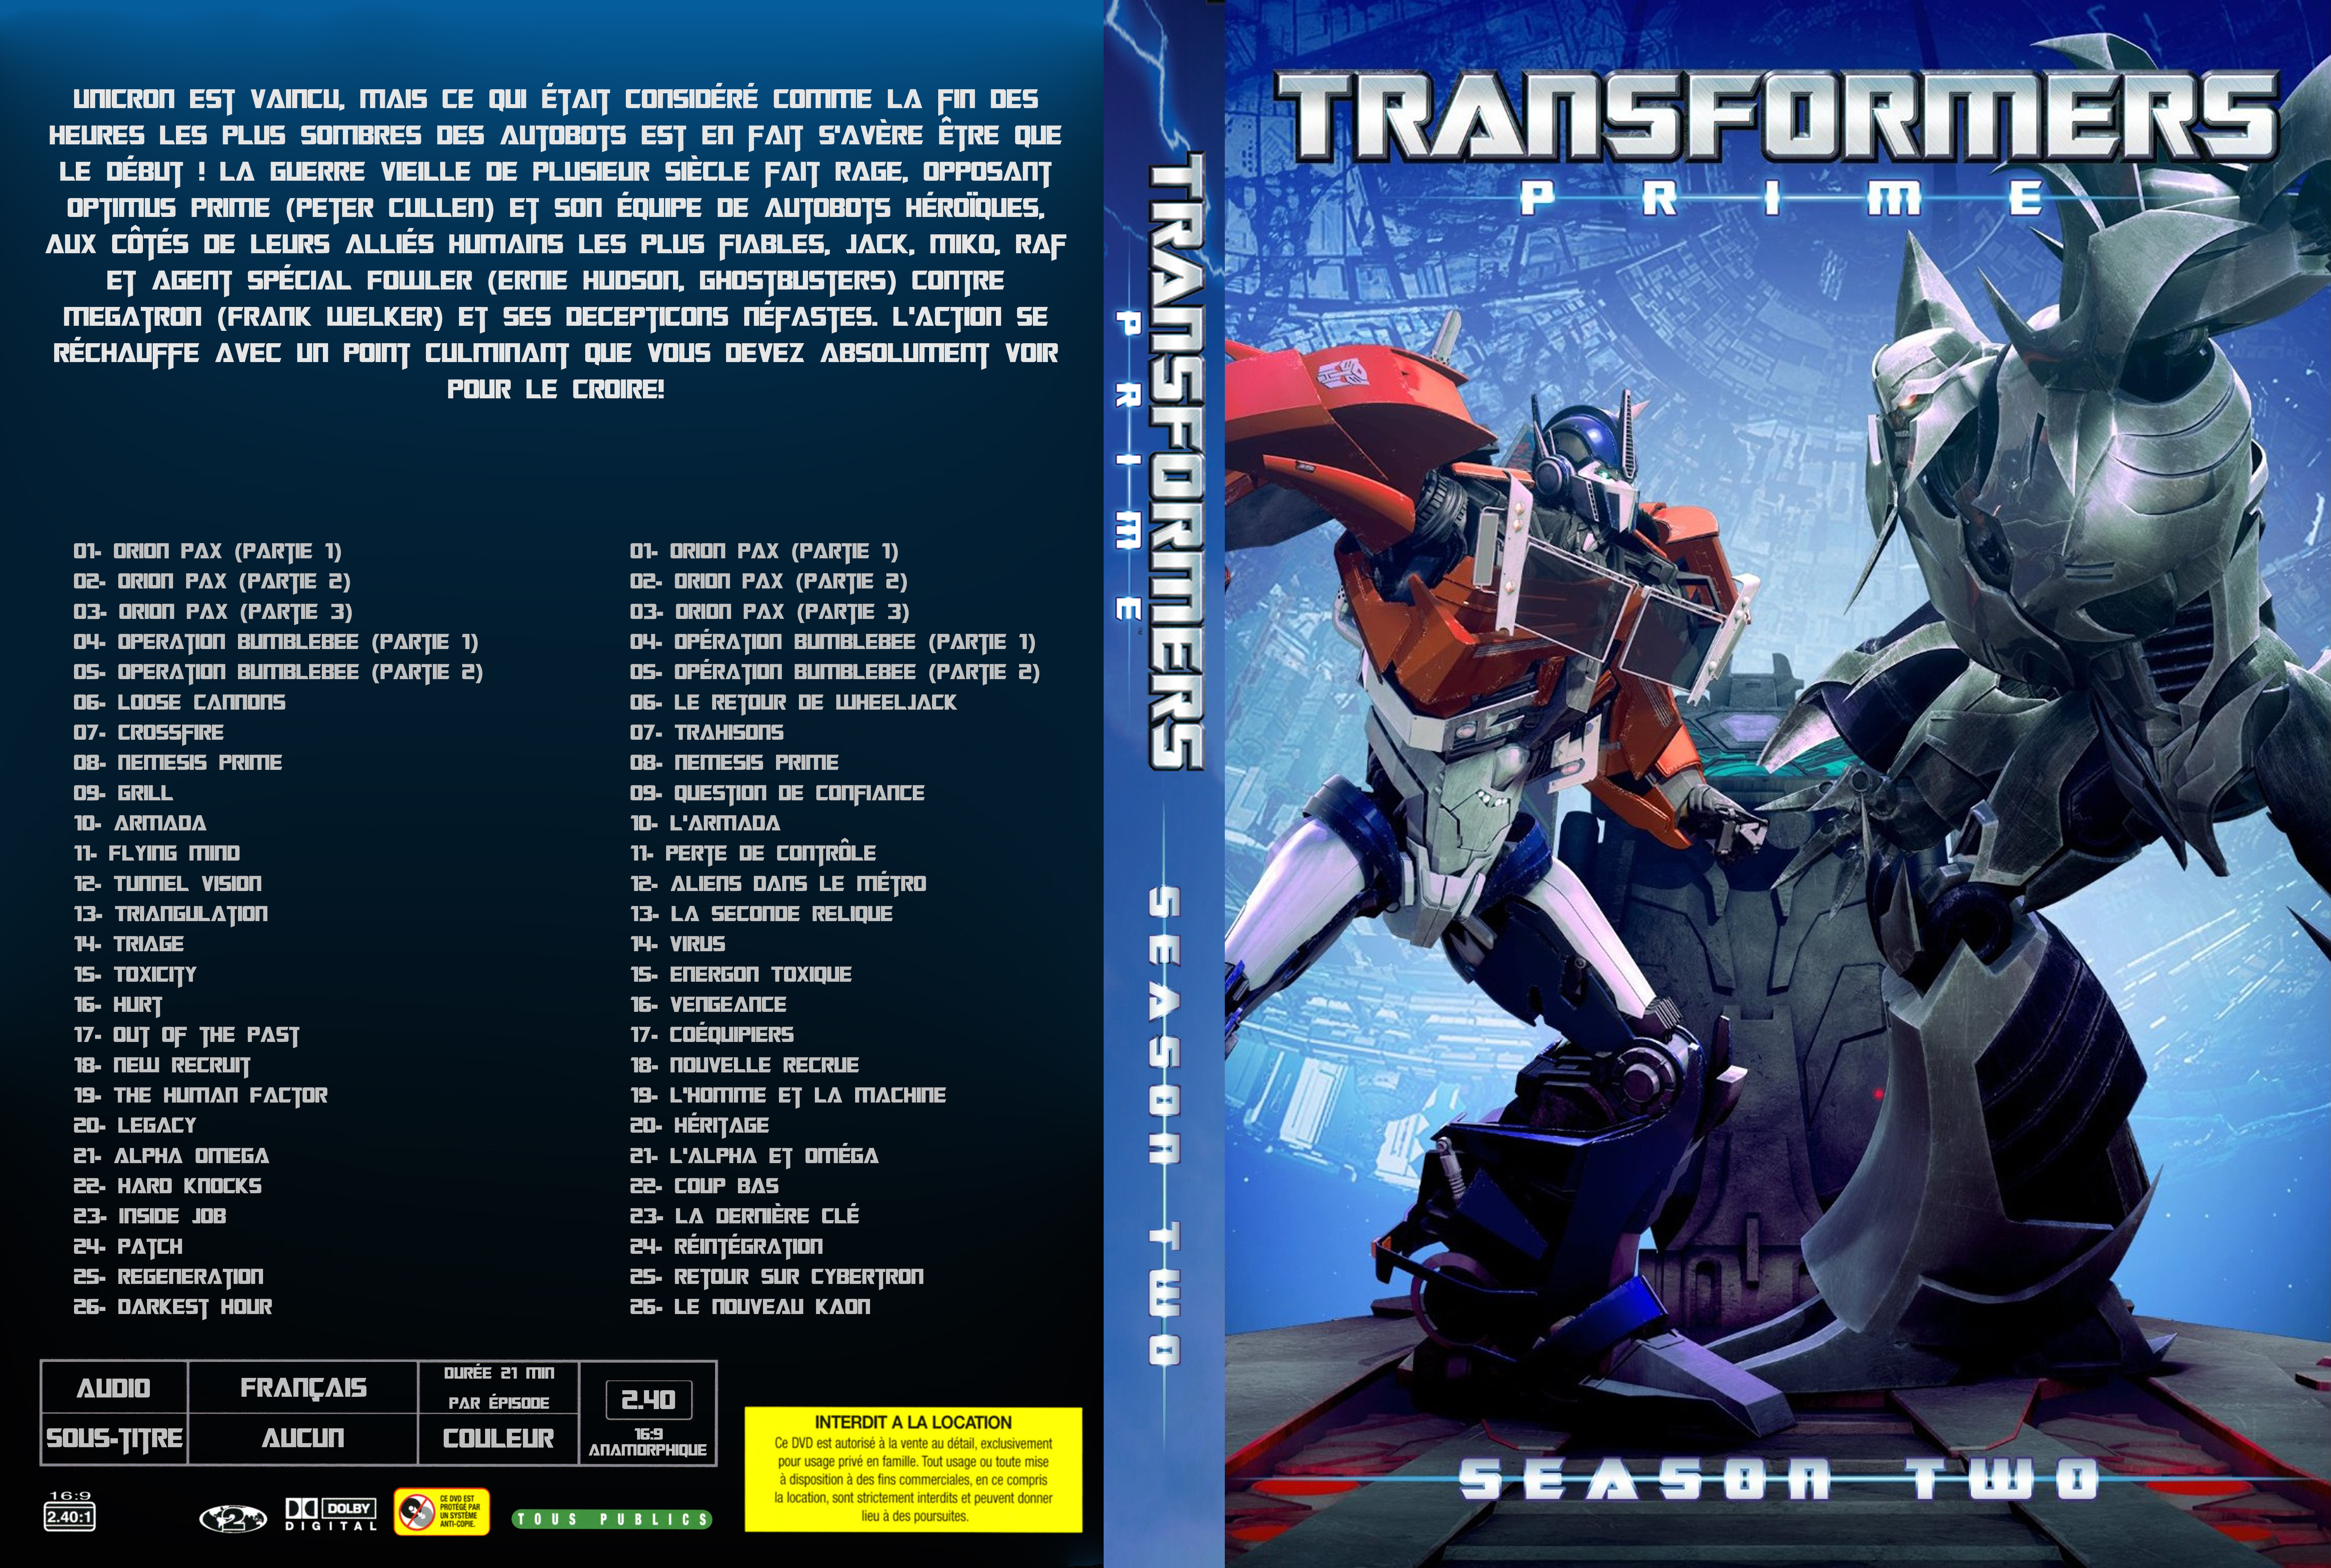 Jaquette DVD Transformers Prime Saison 2 custom v2